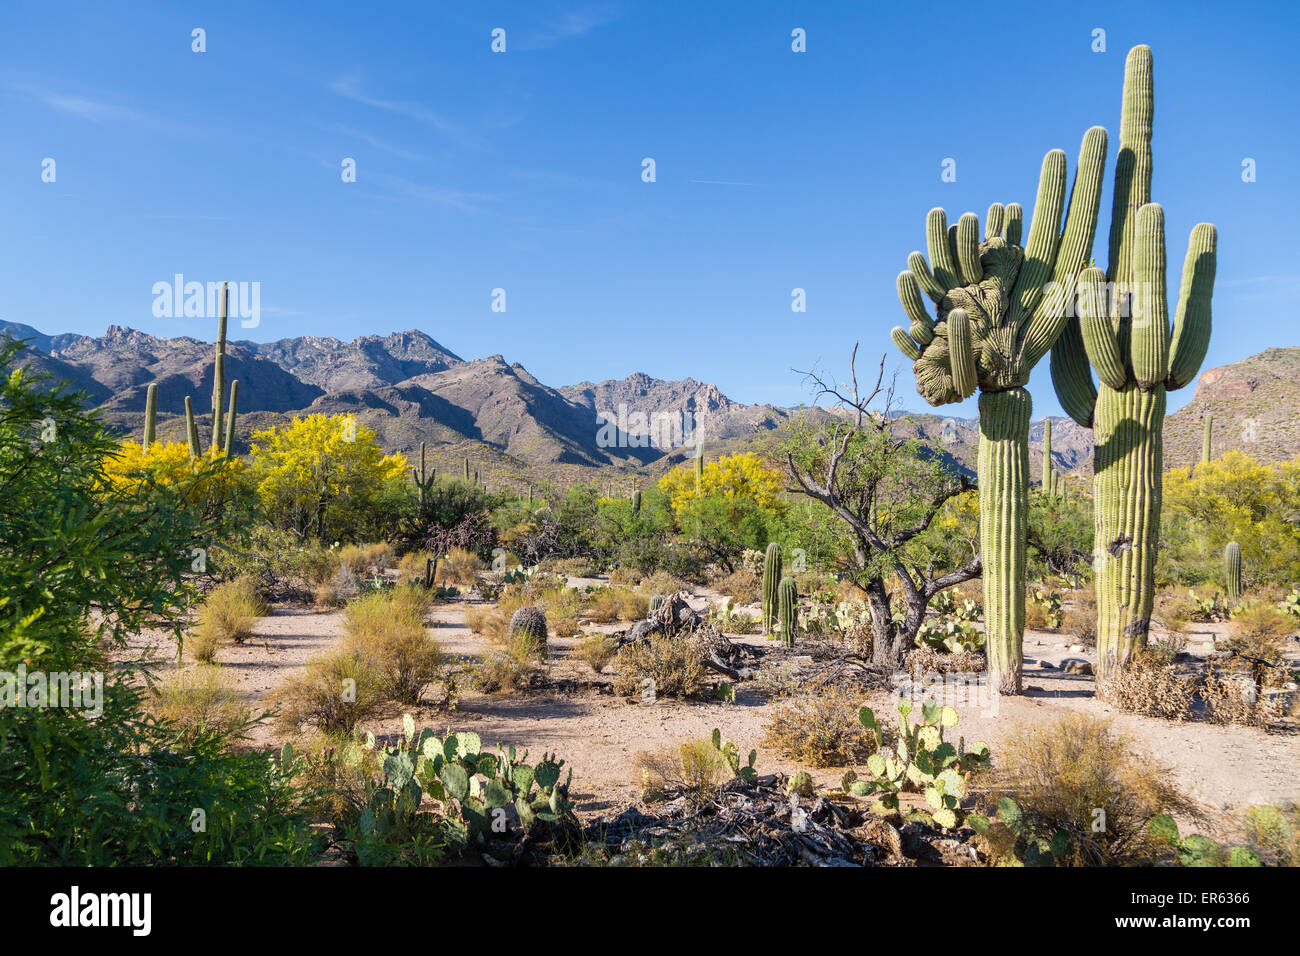 Paesaggio di cactus con il gigante mutante cactus Saguaro (Carnegiea gigantea), montagne dietro, Deserto Sonoran, Tucson, Arizona, Stati Uniti d'America Foto Stock